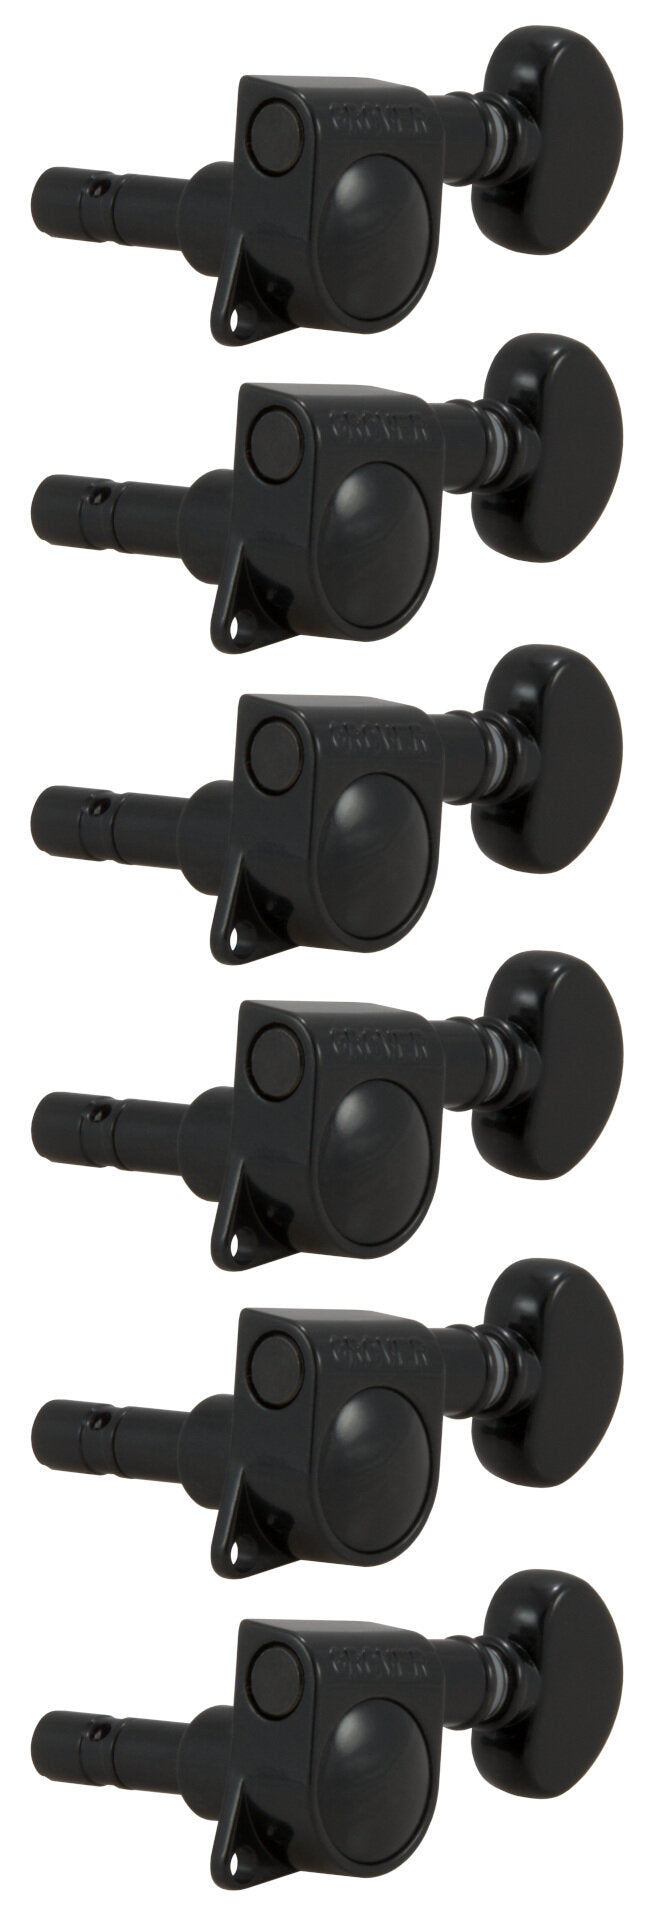 Grover 406BC6 Mini Rotomatics verrouillables avec bouton rond - Mécaniques pour guitare, 6 en ligne, côté basse (gauche) - Noir chromé 